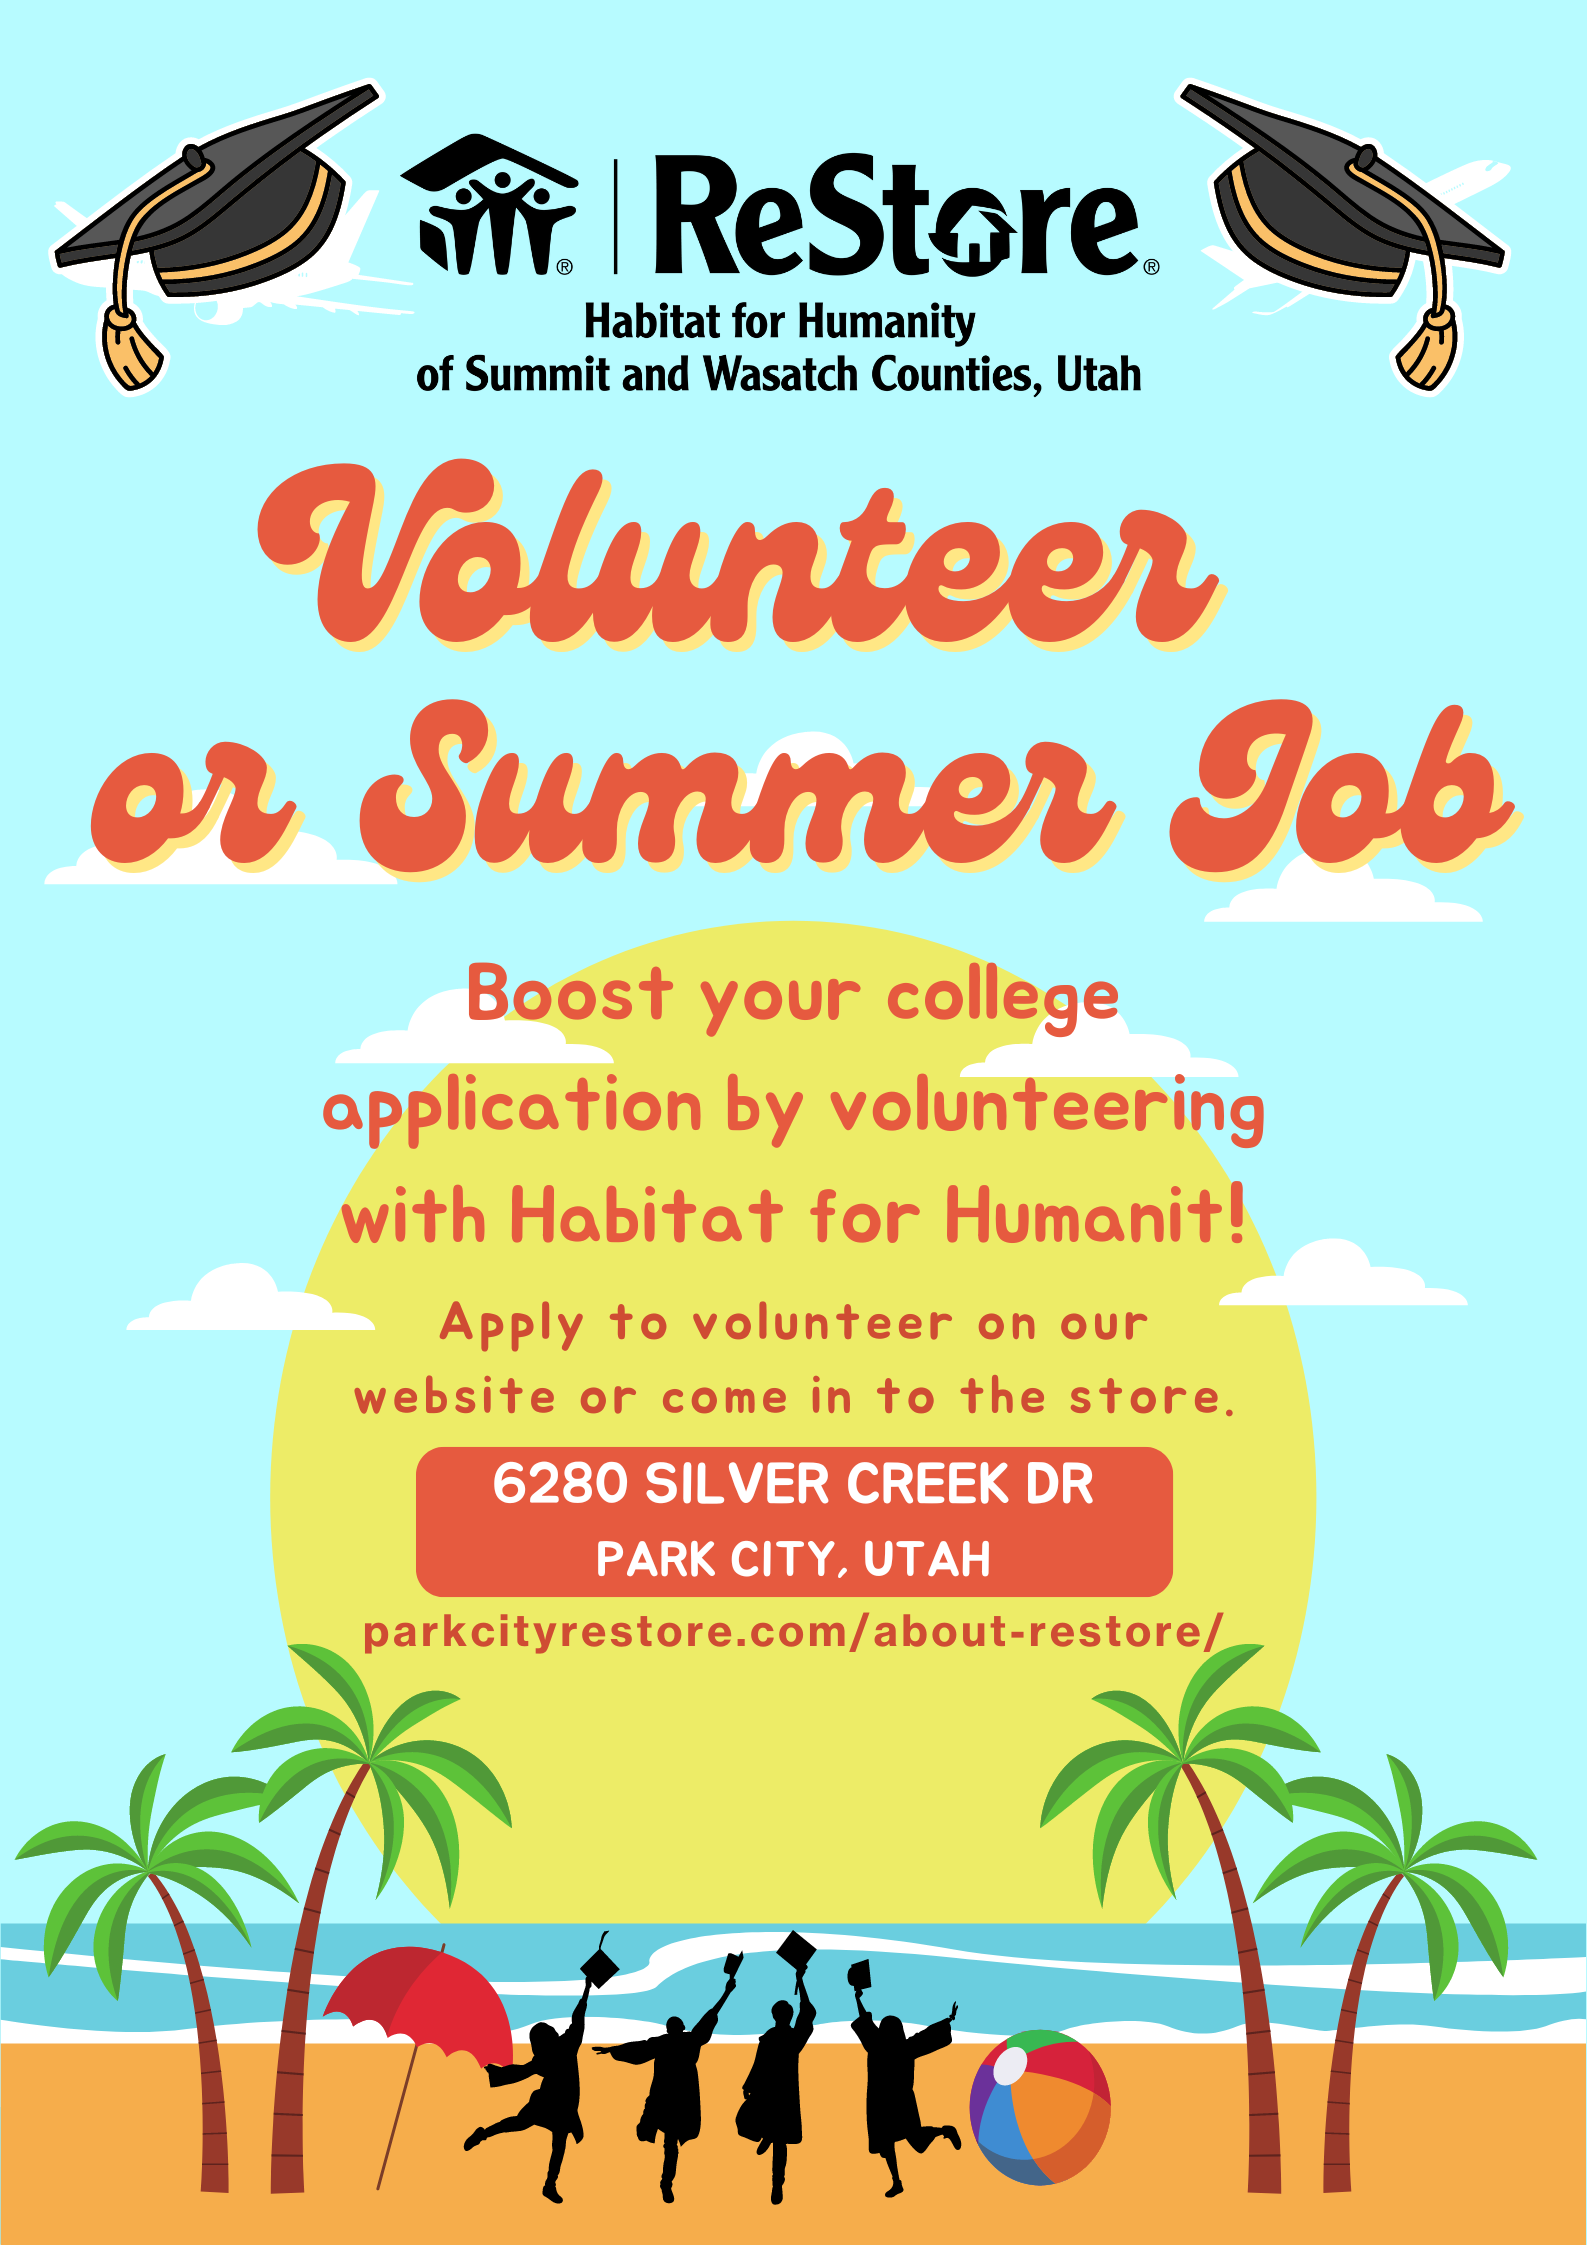 volunteer or summer job opportunity